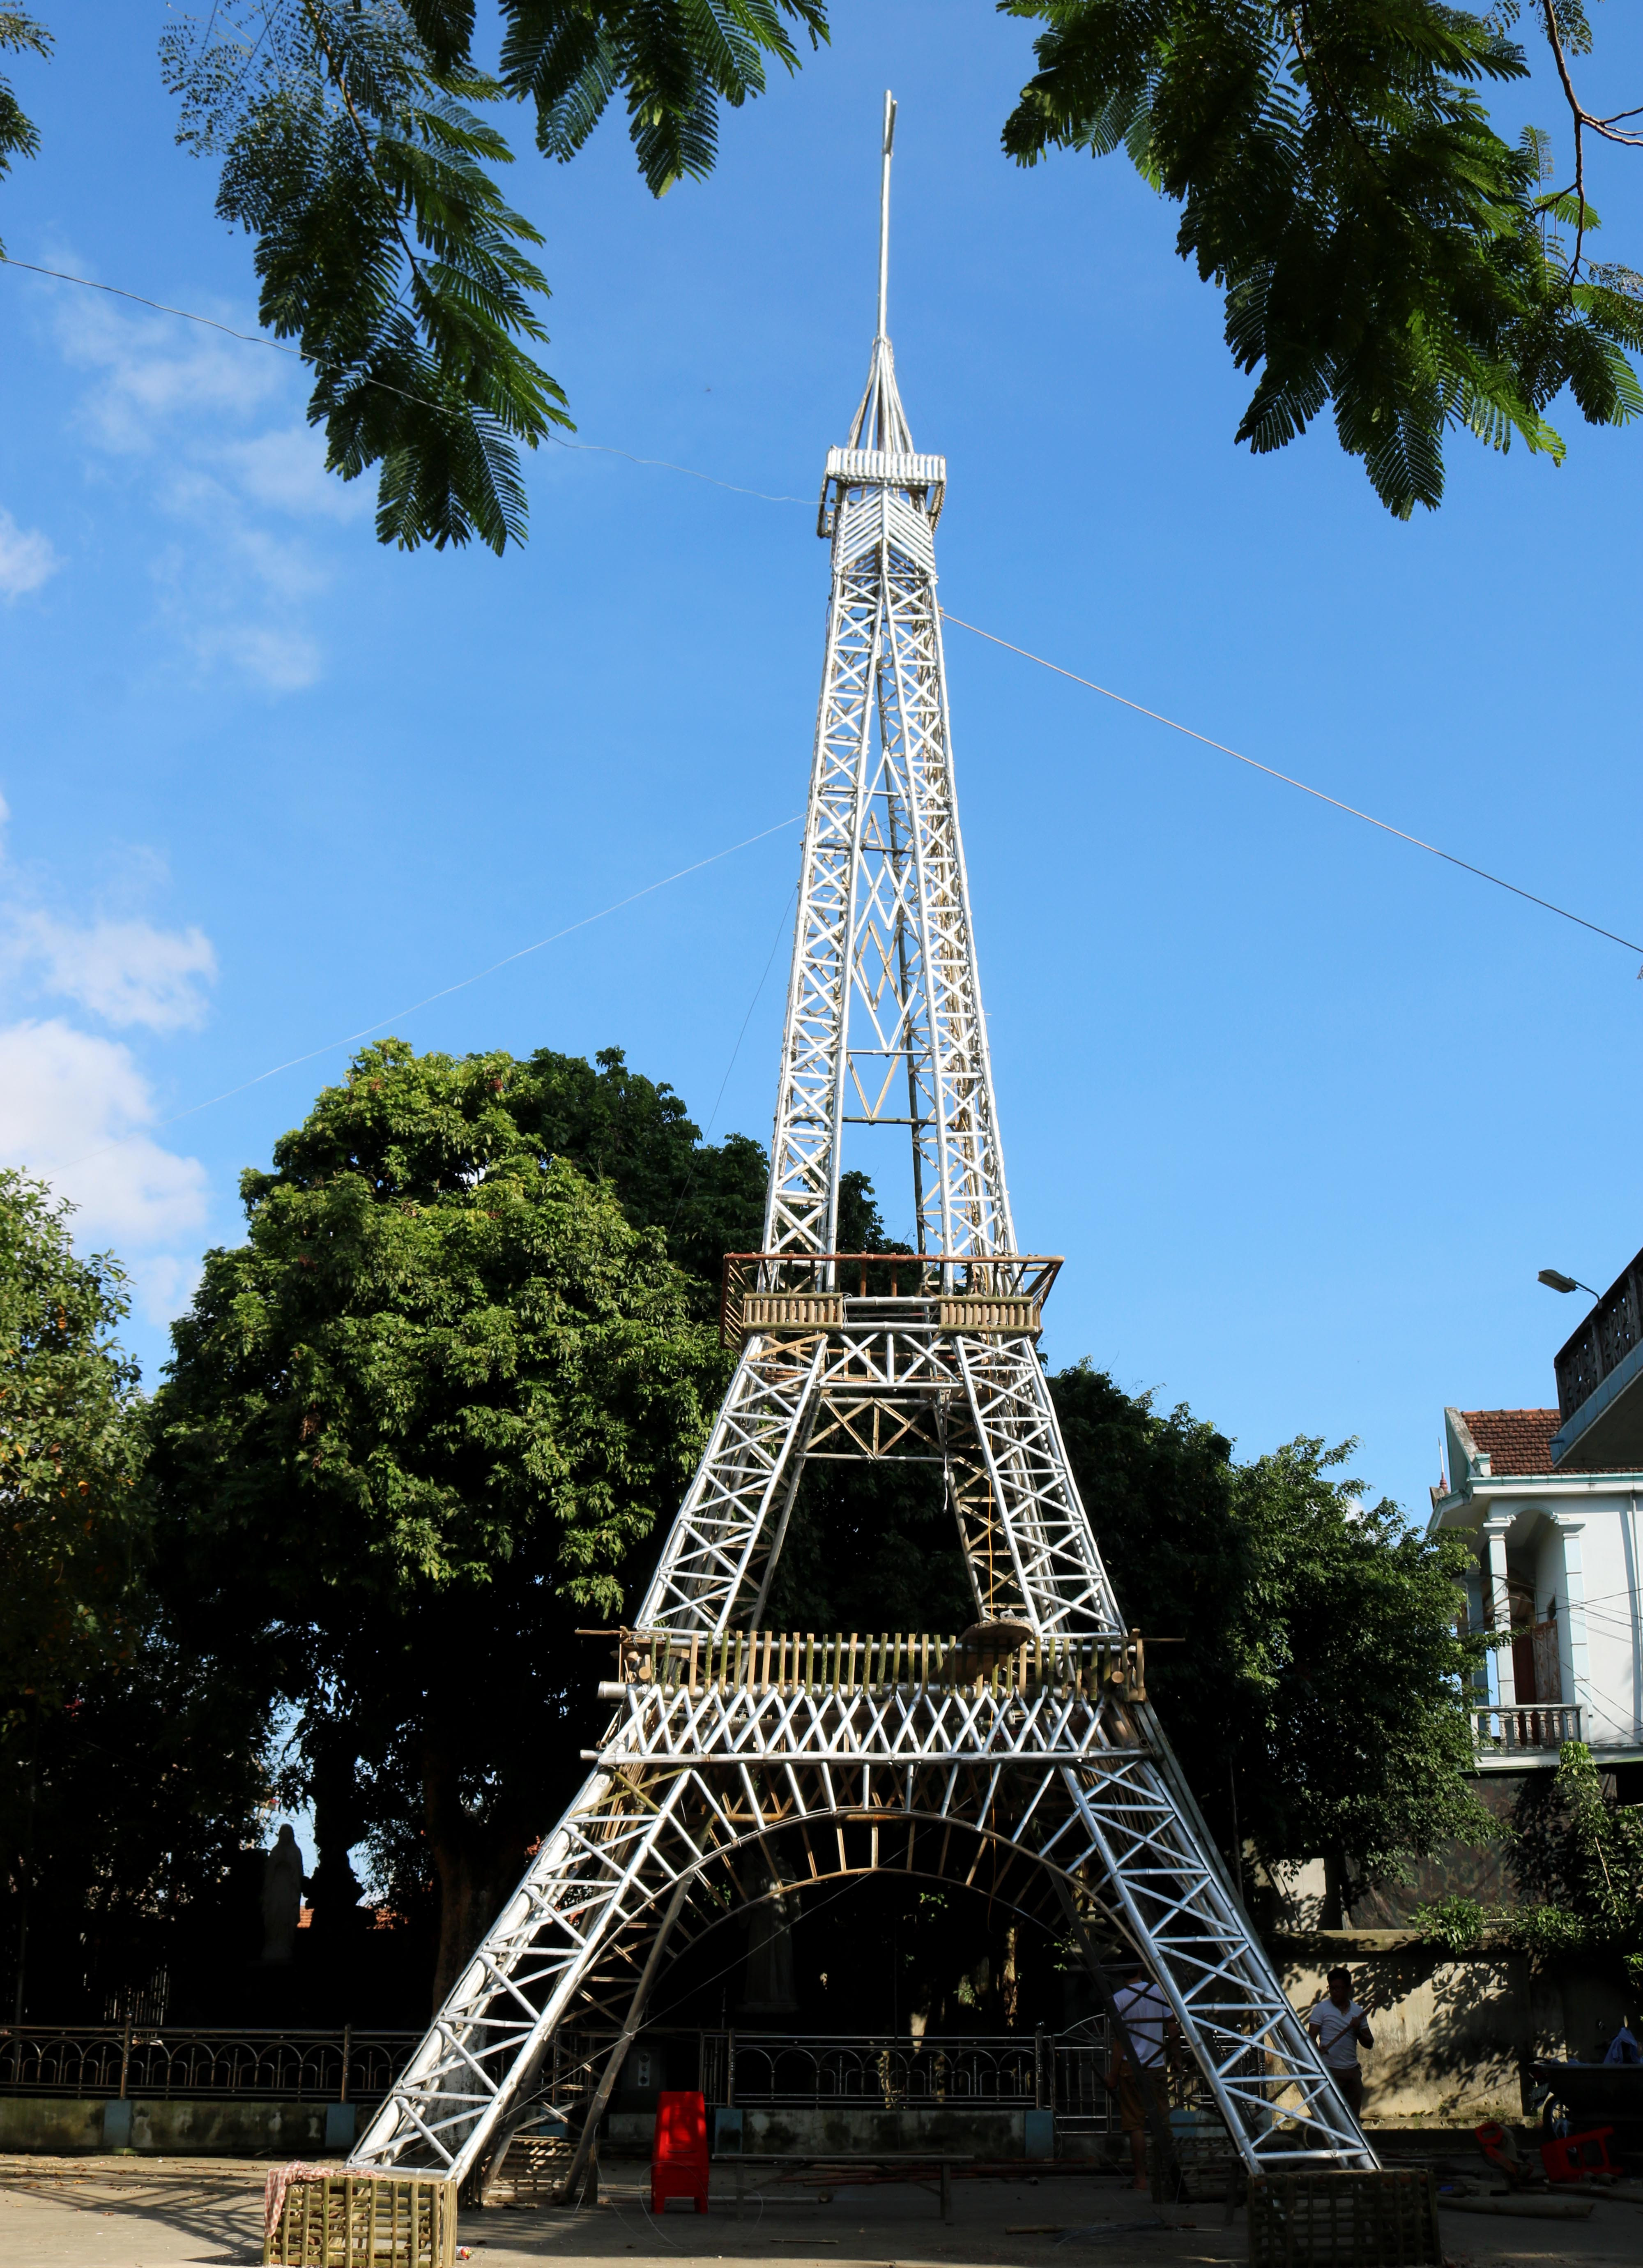 Tháp Eiffel tre ở giáo xứ  Văn Thành xã Thanh Giang cao 22 mét, diện tích mặt đáy rộng gần 36 m2  mô phỏng tháp Eiffel ở Pari (Pháp) là công trình độc đáo khánh thành sớm nhất trong mùa Giáng sinh năm nay.